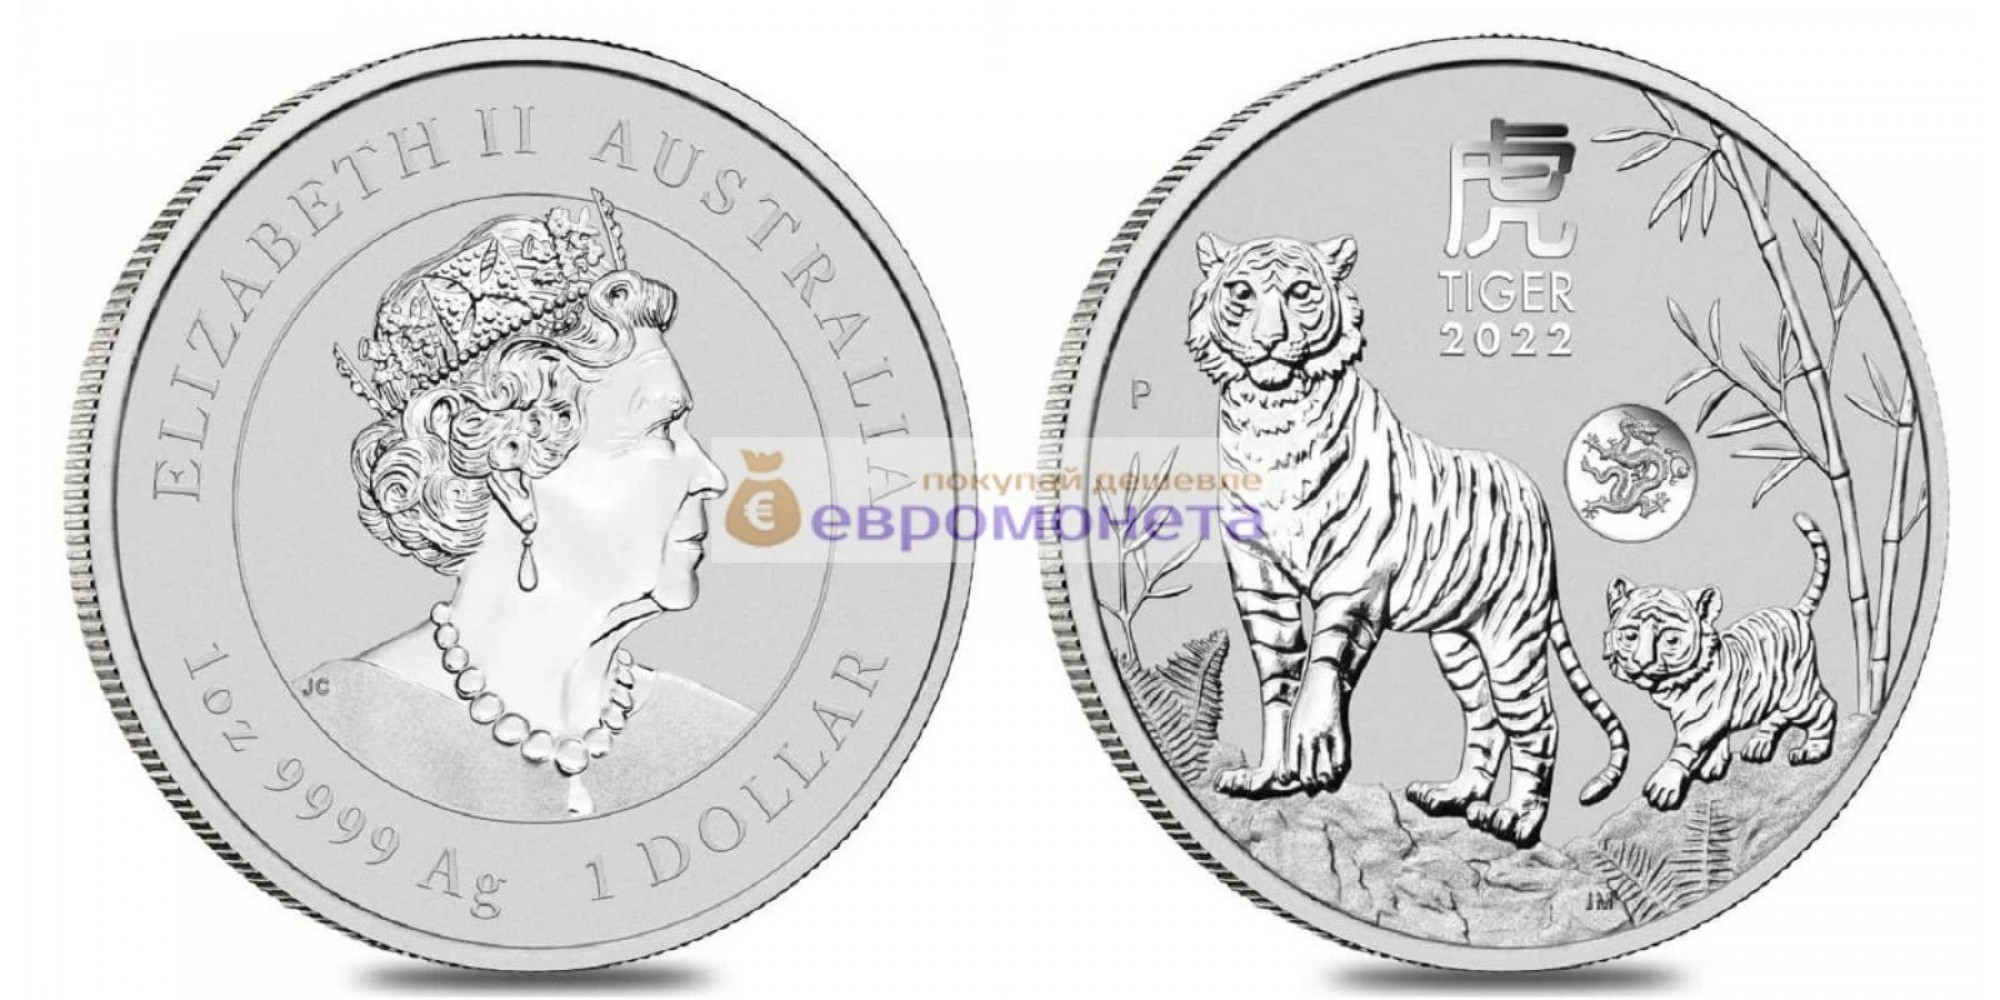 Австралия 1 доллар 2022 год Тигра /Тигр с тигрёнком/. Серебро унция 999 пробы. Тираж 30 000 шт.